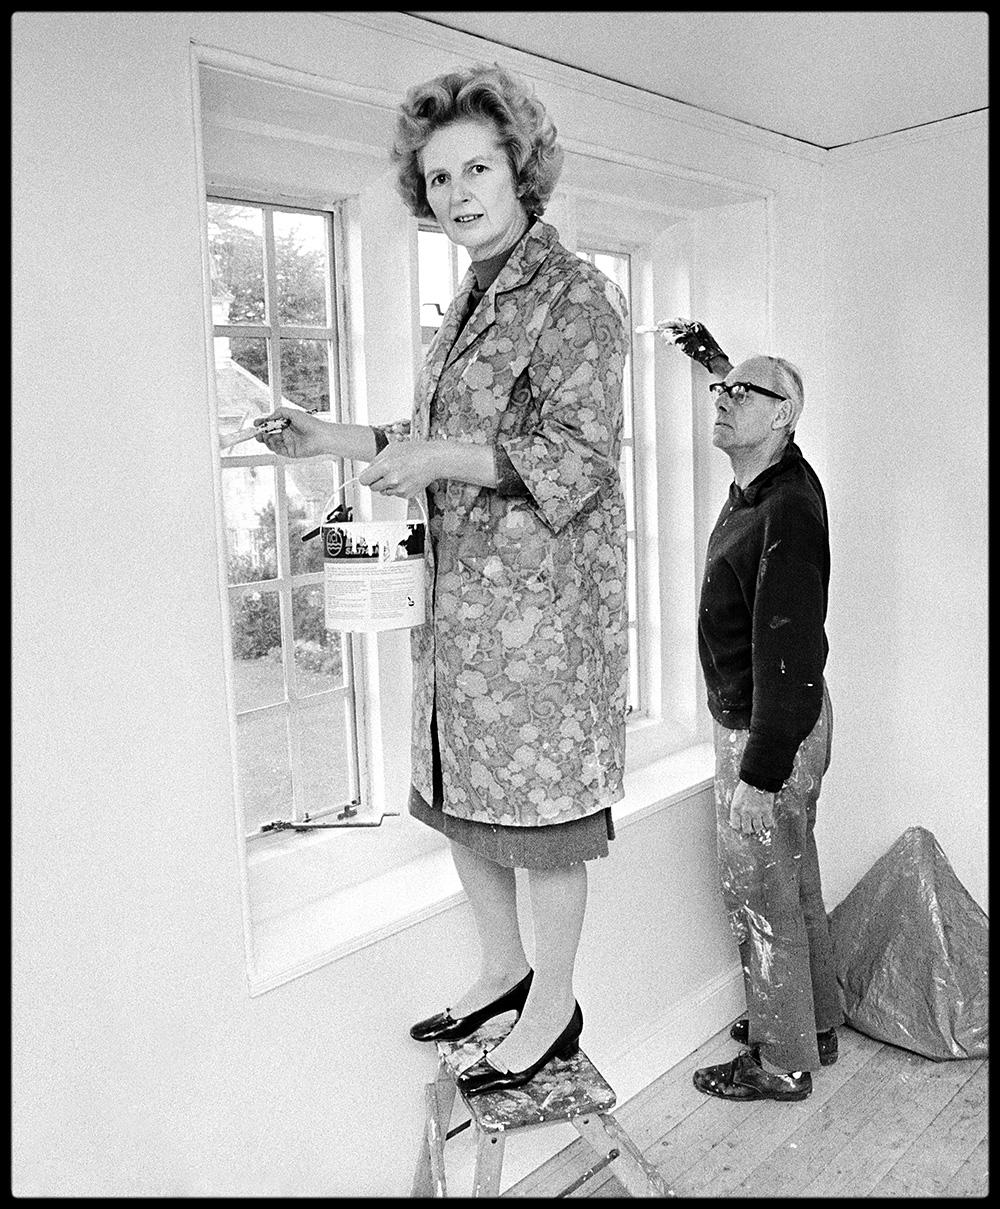 Thatcher Decorating Ironing Lady

Par Arthur Steele 

Taille du papier : 54 x 41" / 137 x 104 cm

Tirage à la gélatine argentique
1970 (imprimé ultérieurement)
non encadré
signé à la main
édition limitée à 20 exemplaires

note : d'autres tailles